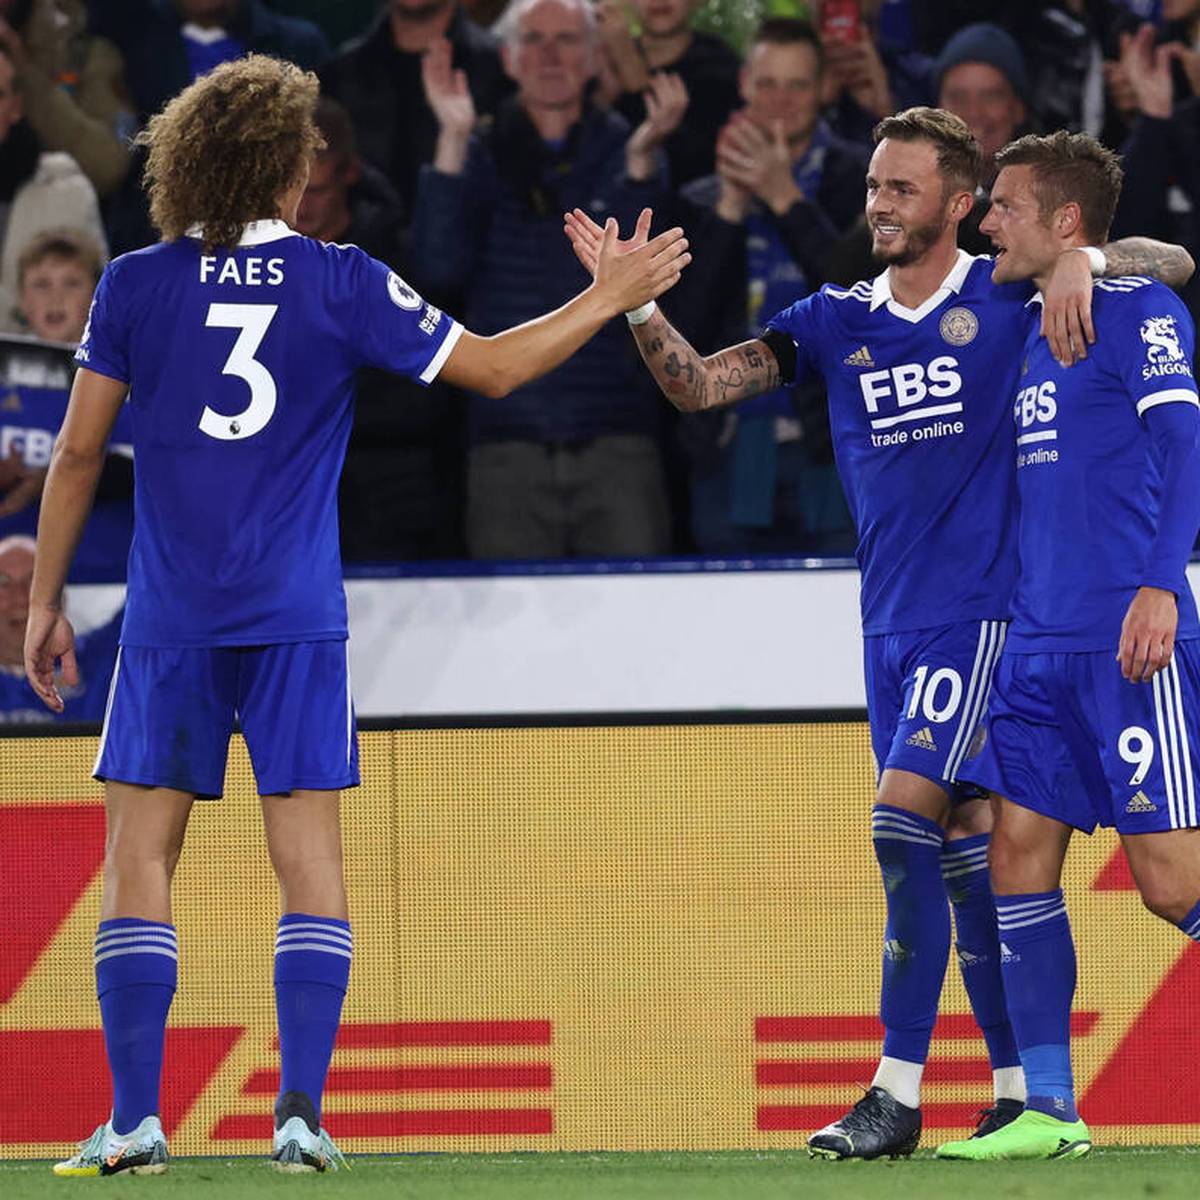 Leicester City düpiert Aufsteiger Nottingham Forest und feiert den ersten Saisonsieg. Matchwinner für die Foxes wird James Maddison.